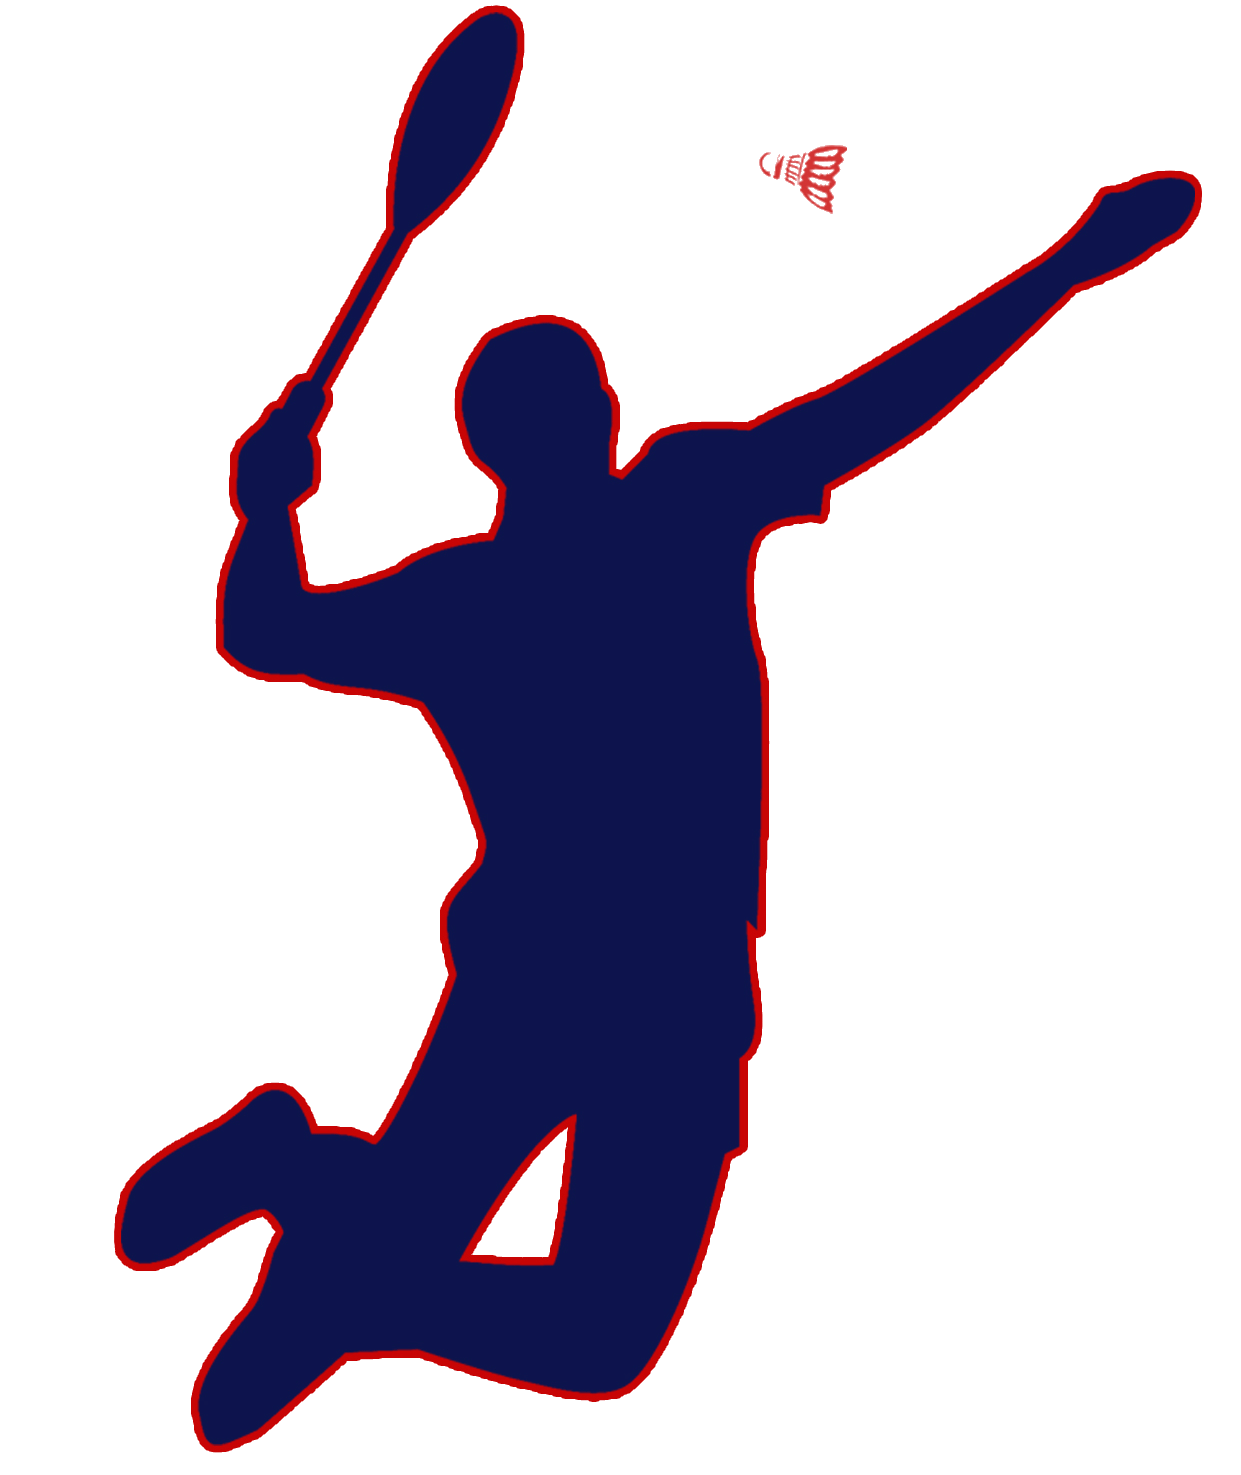 Badminton logo clipart